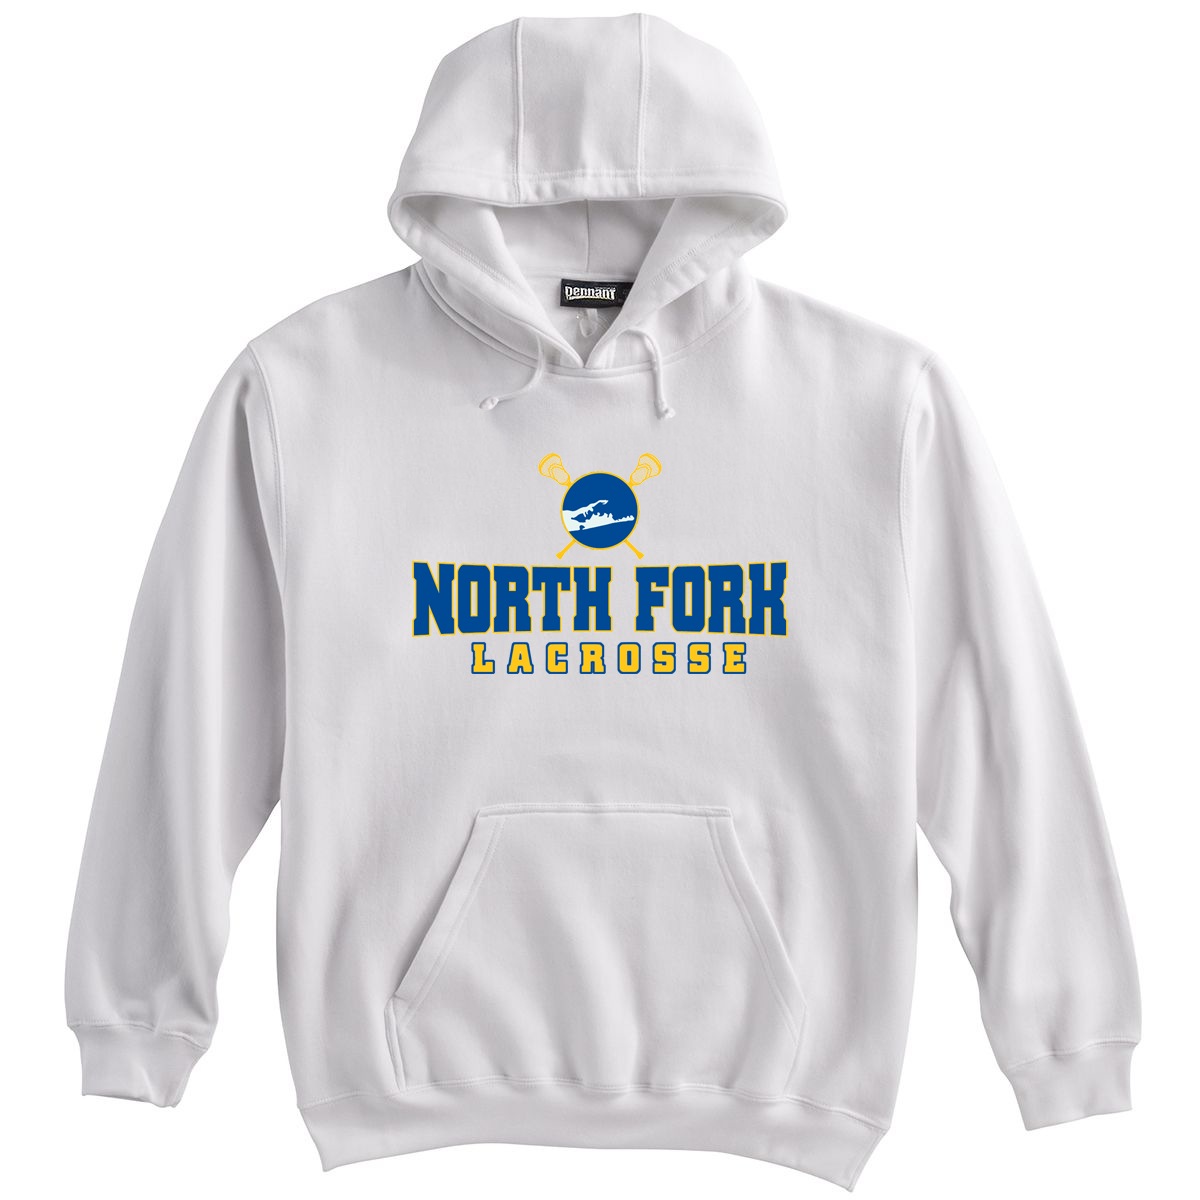 North Fork Lacrosse Sweatshirt